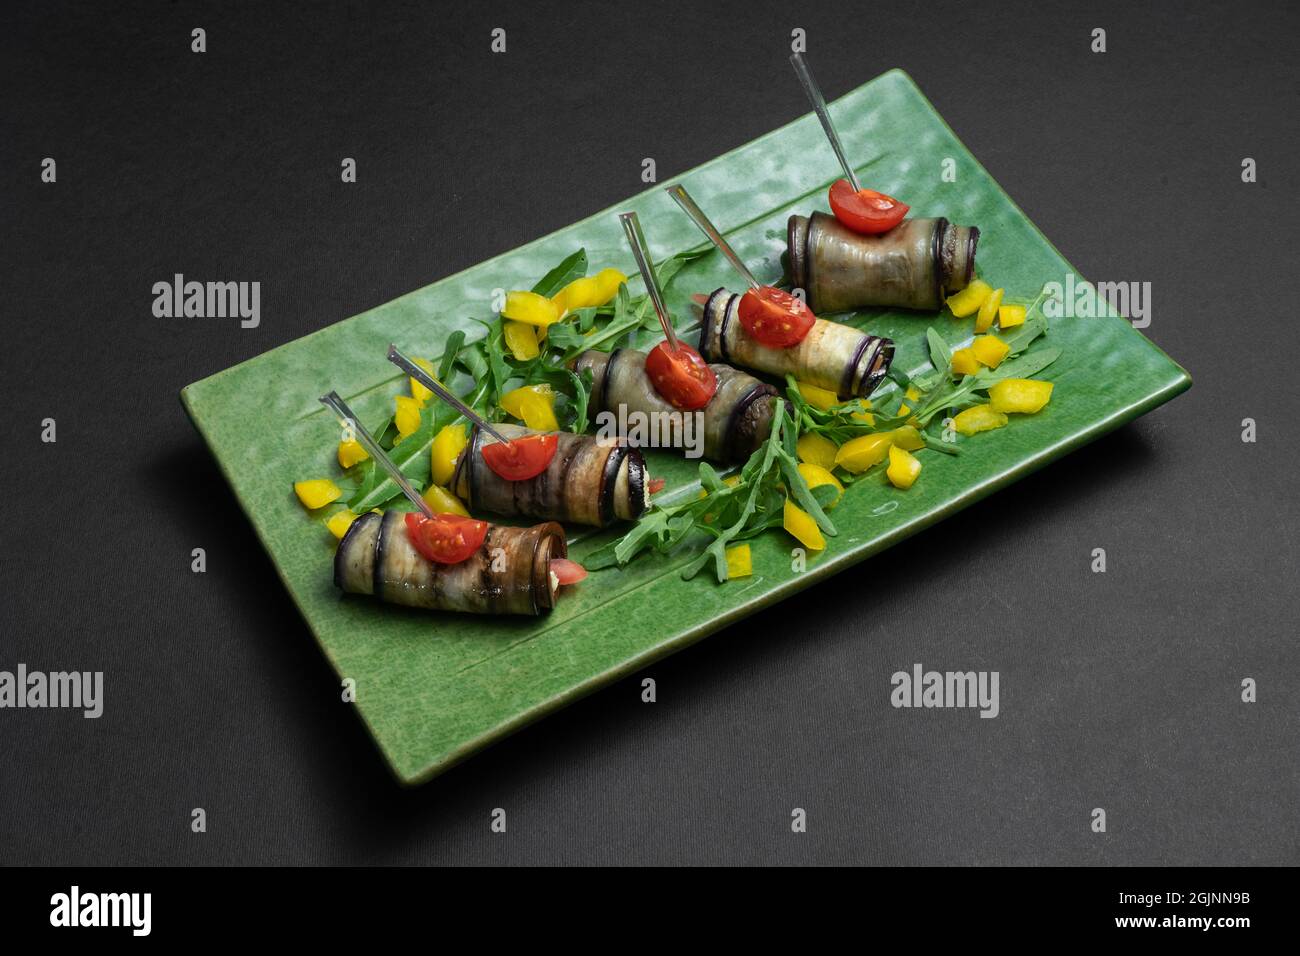 primo piano di involtini di melanzane con formaggio cremoso su piatto verde su sfondo nero Foto Stock